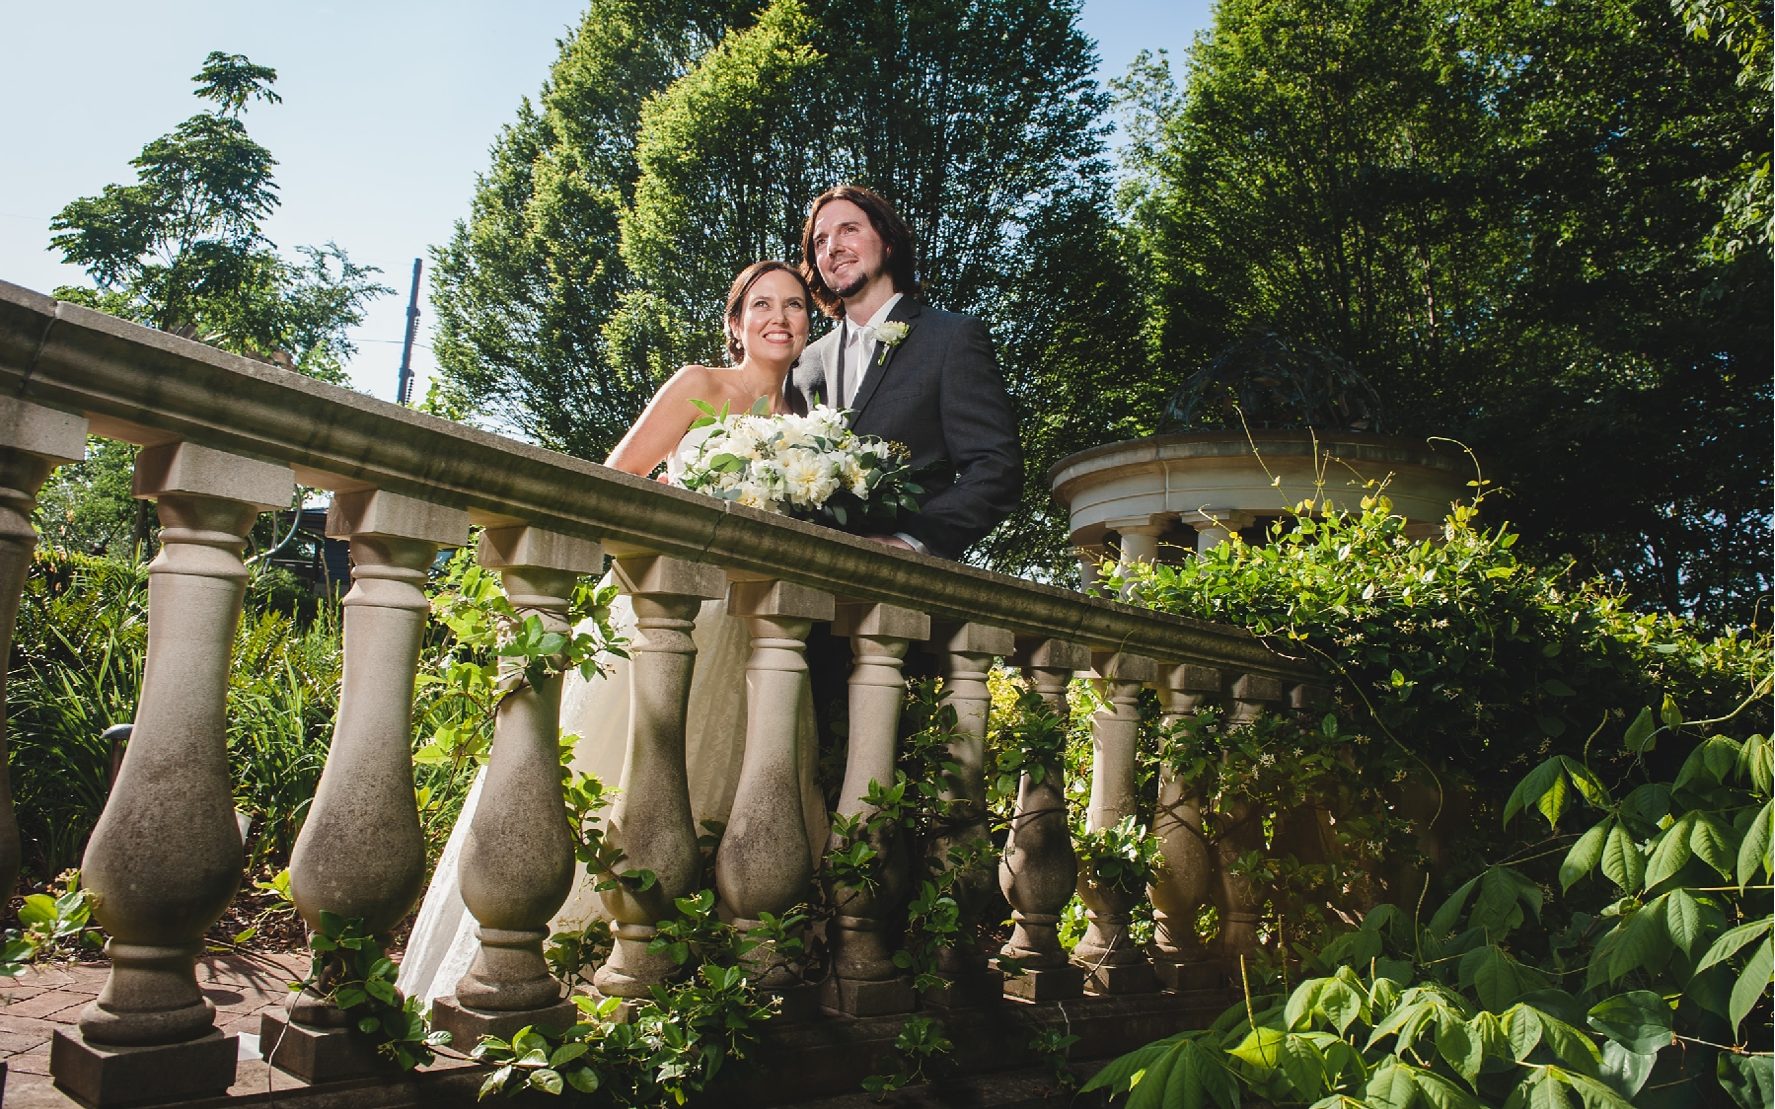 Anna and Ryan's wedding at The Atlanta Botanical Garden